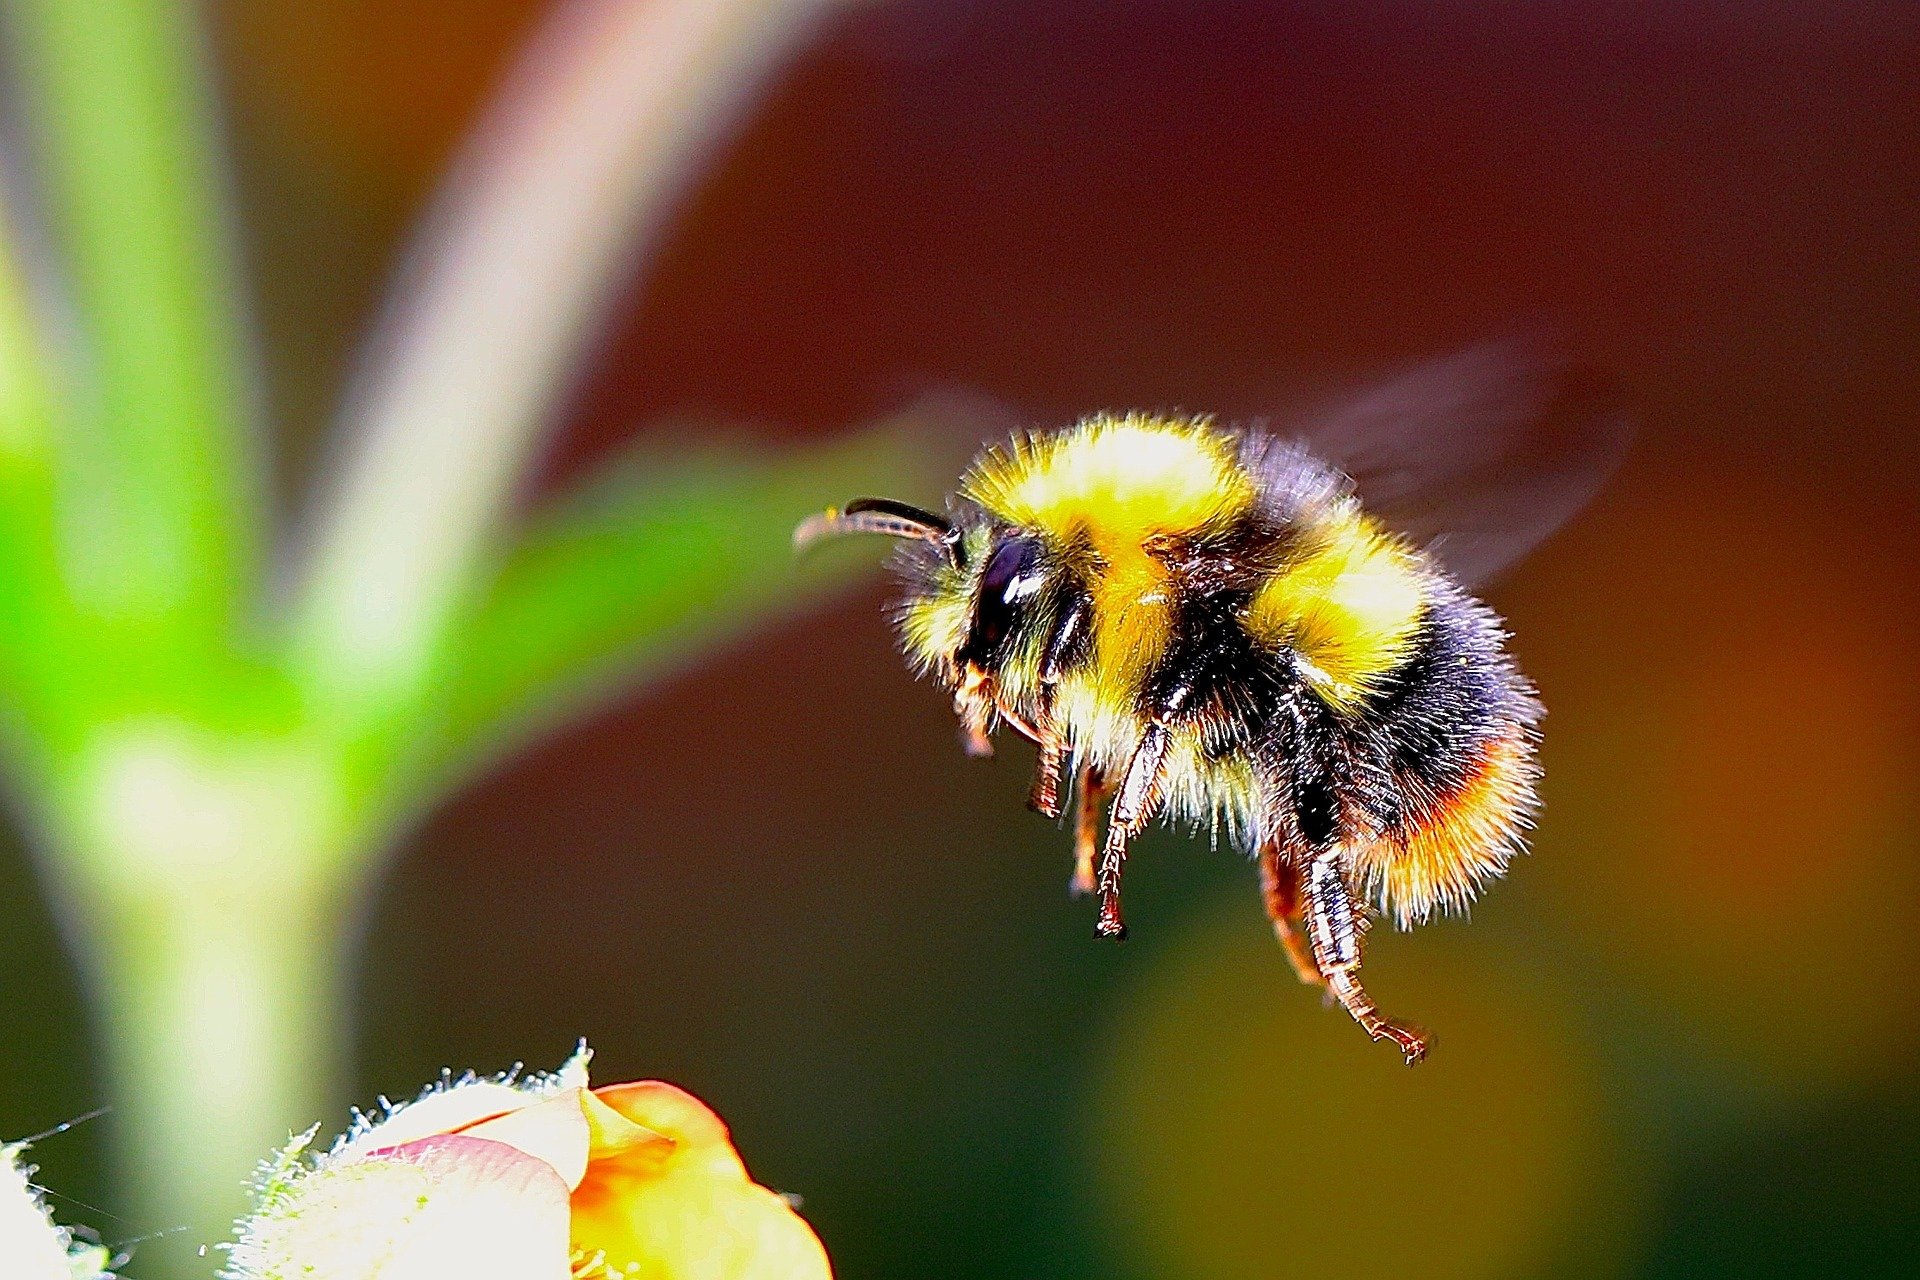 世界上使用最广泛的除草剂草甘膦会显著损害熊蜂集体维持蜂巢温度的能力